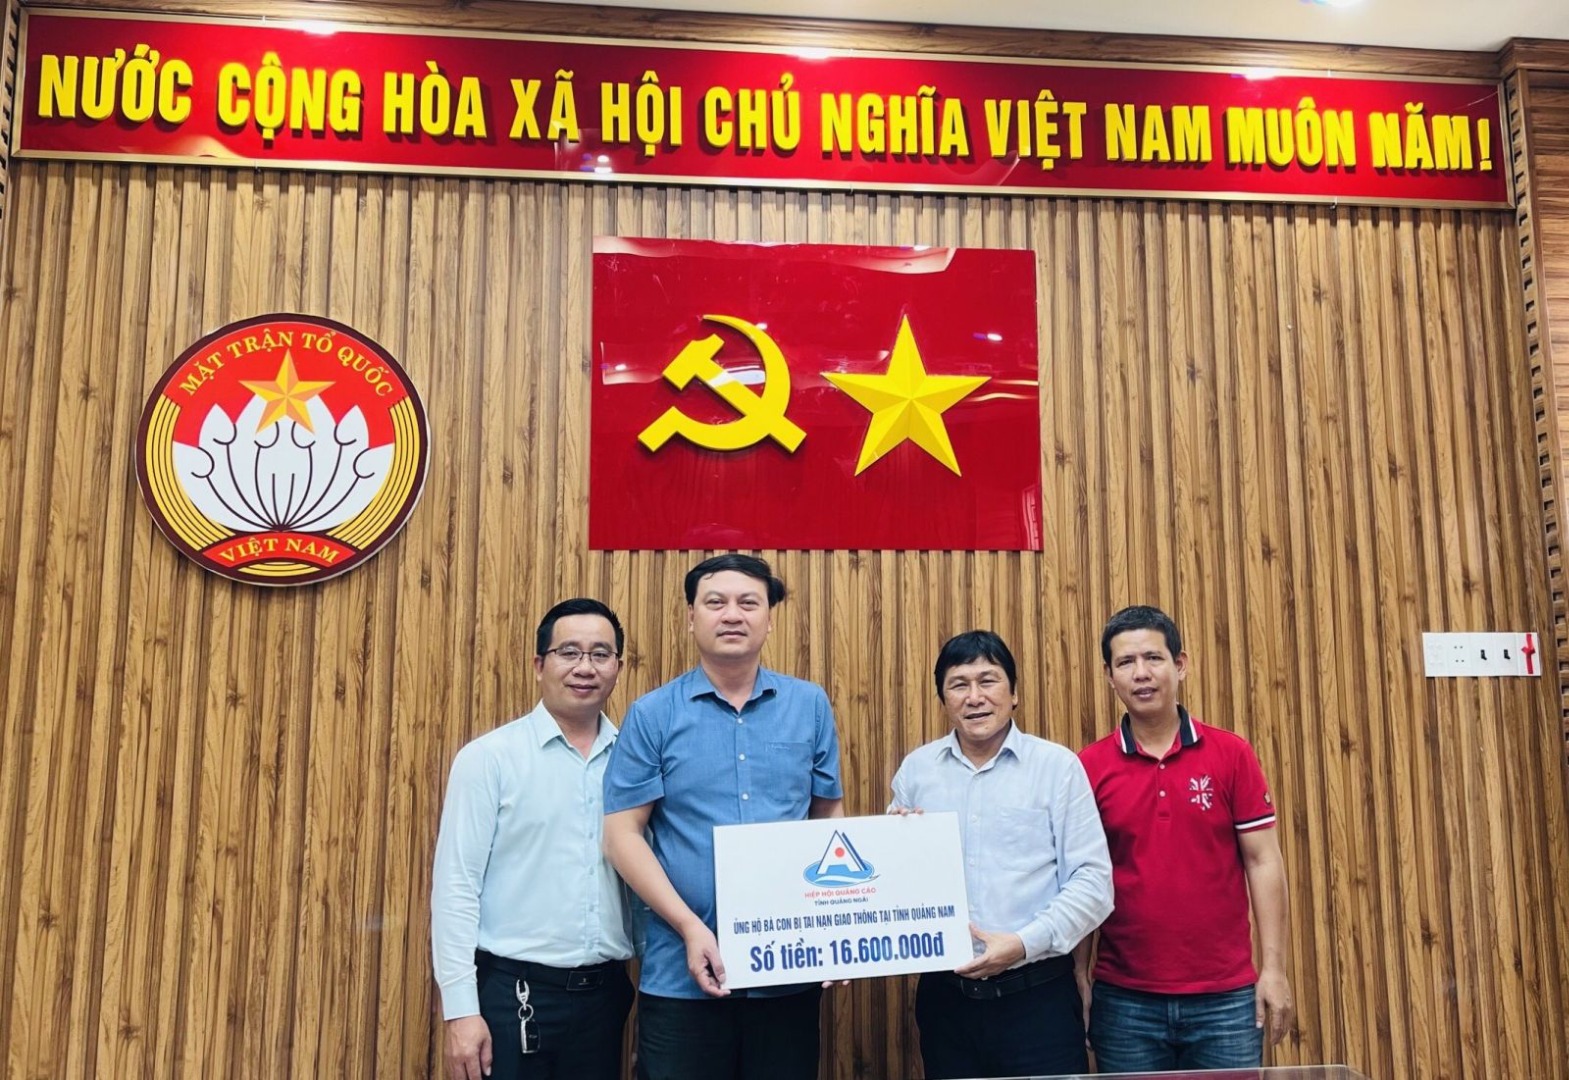 Hiệp hội Quảng cáo tỉnh Quảng Ngãi hỗ trợ các nạn nhân trong vụ tai nạn giao thông ở Quảng Nam